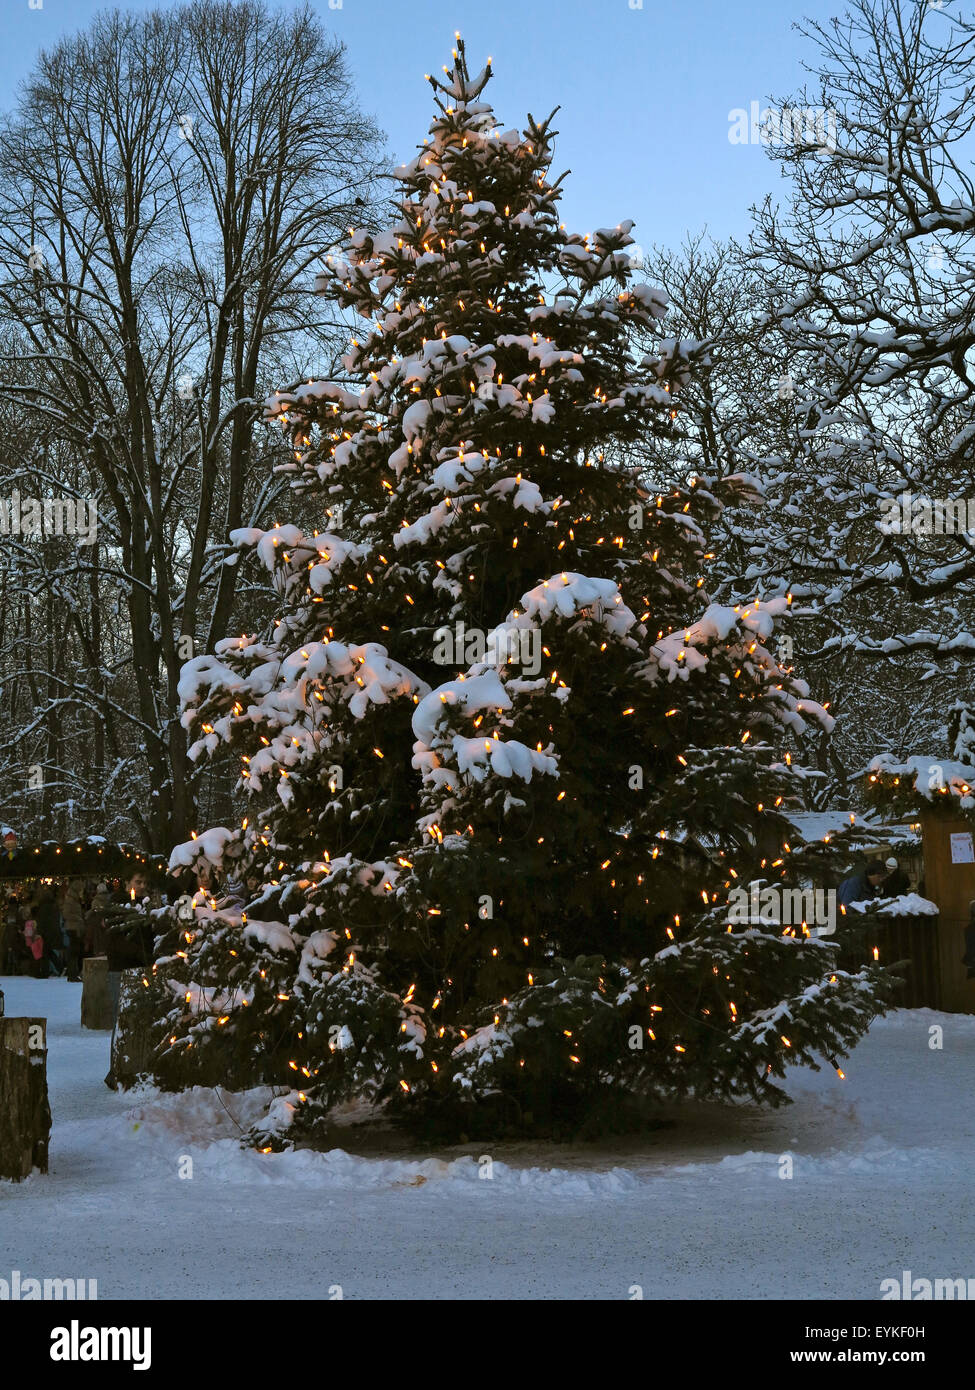 In Germania, in Baviera, Monaco di Baviera, il Giardino Inglese fiera di Natale a torre cinese, Foto Stock